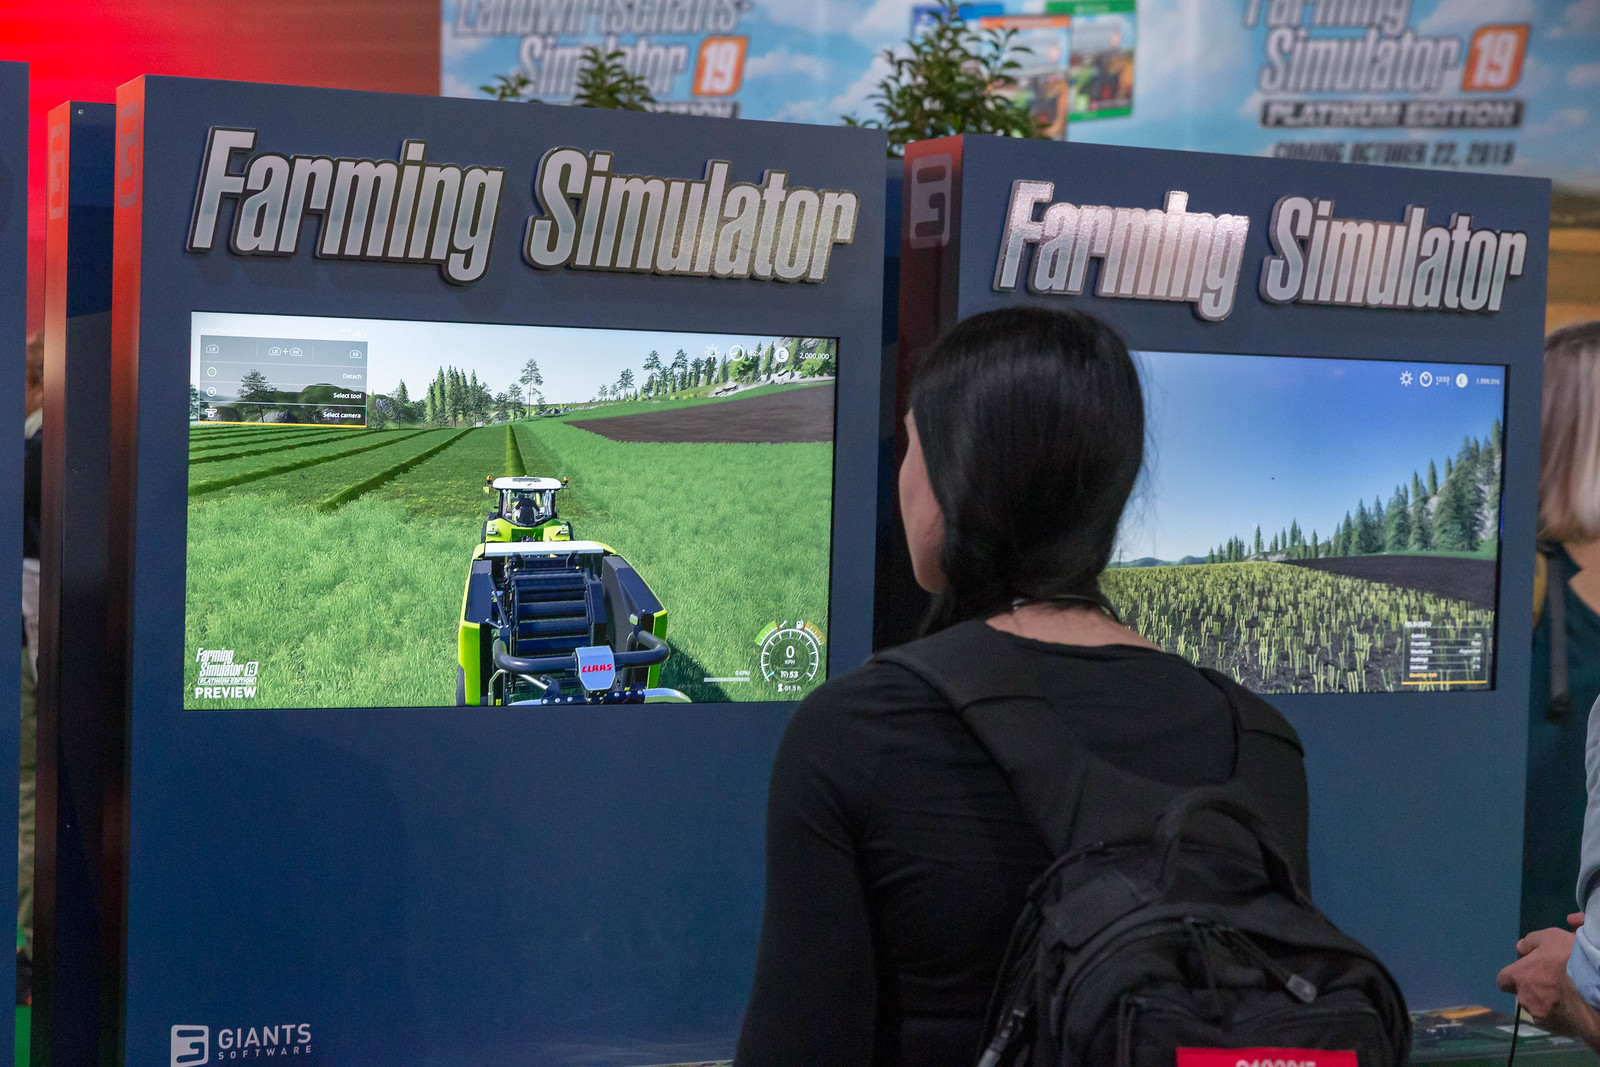 Farming Simulator - Marco Verch via flickr